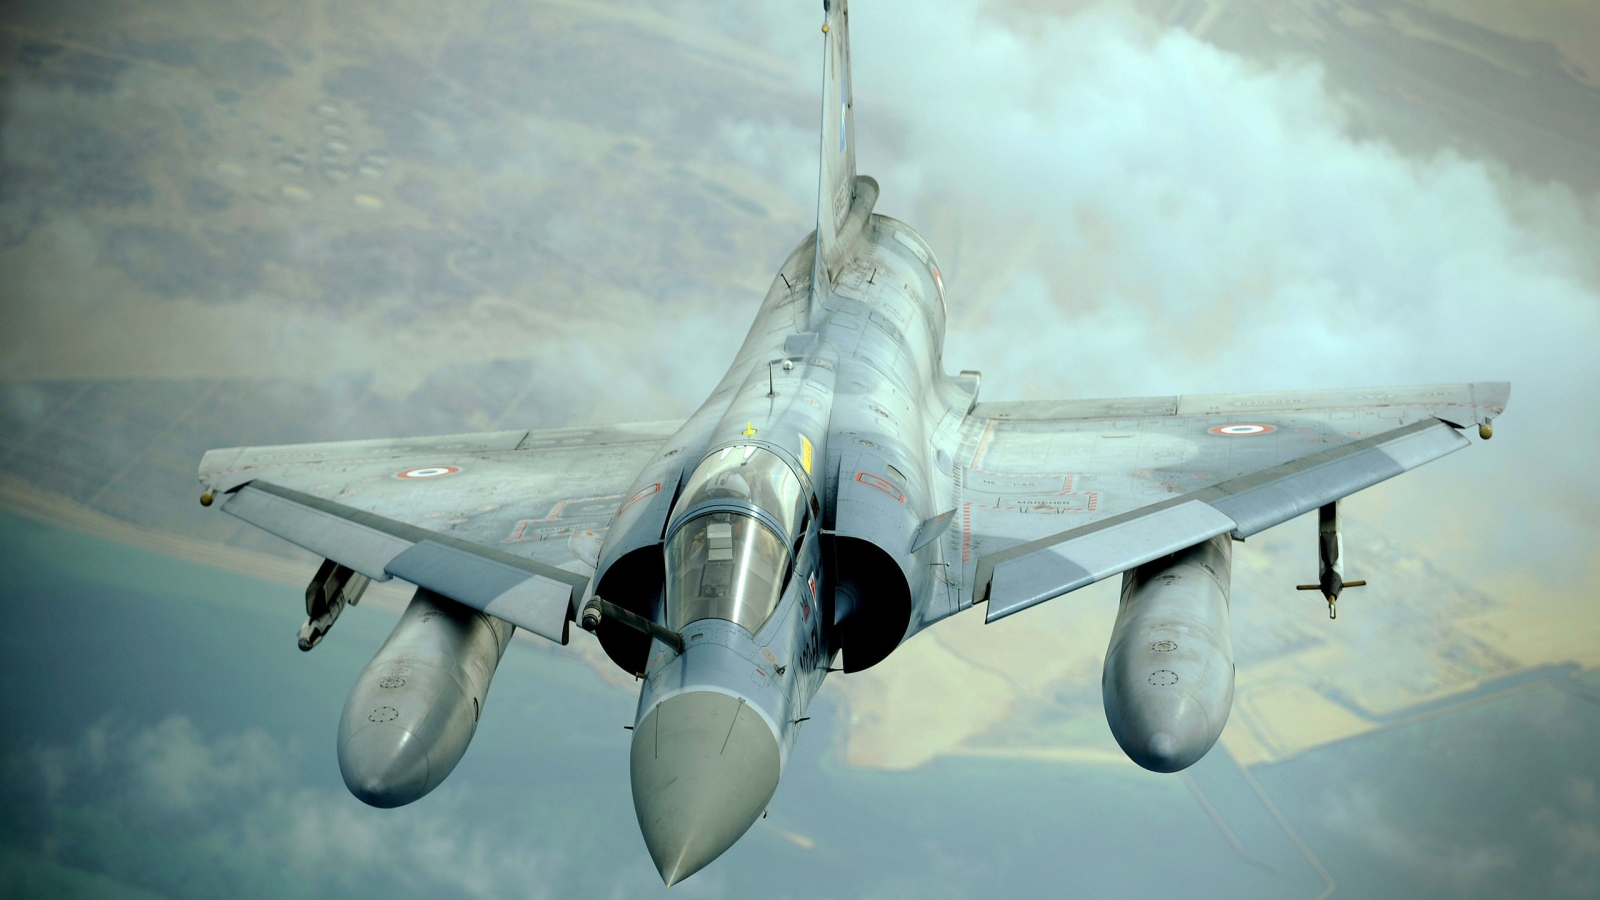 Dassault Mirage 2000 for 1600 x 900 HDTV resolution